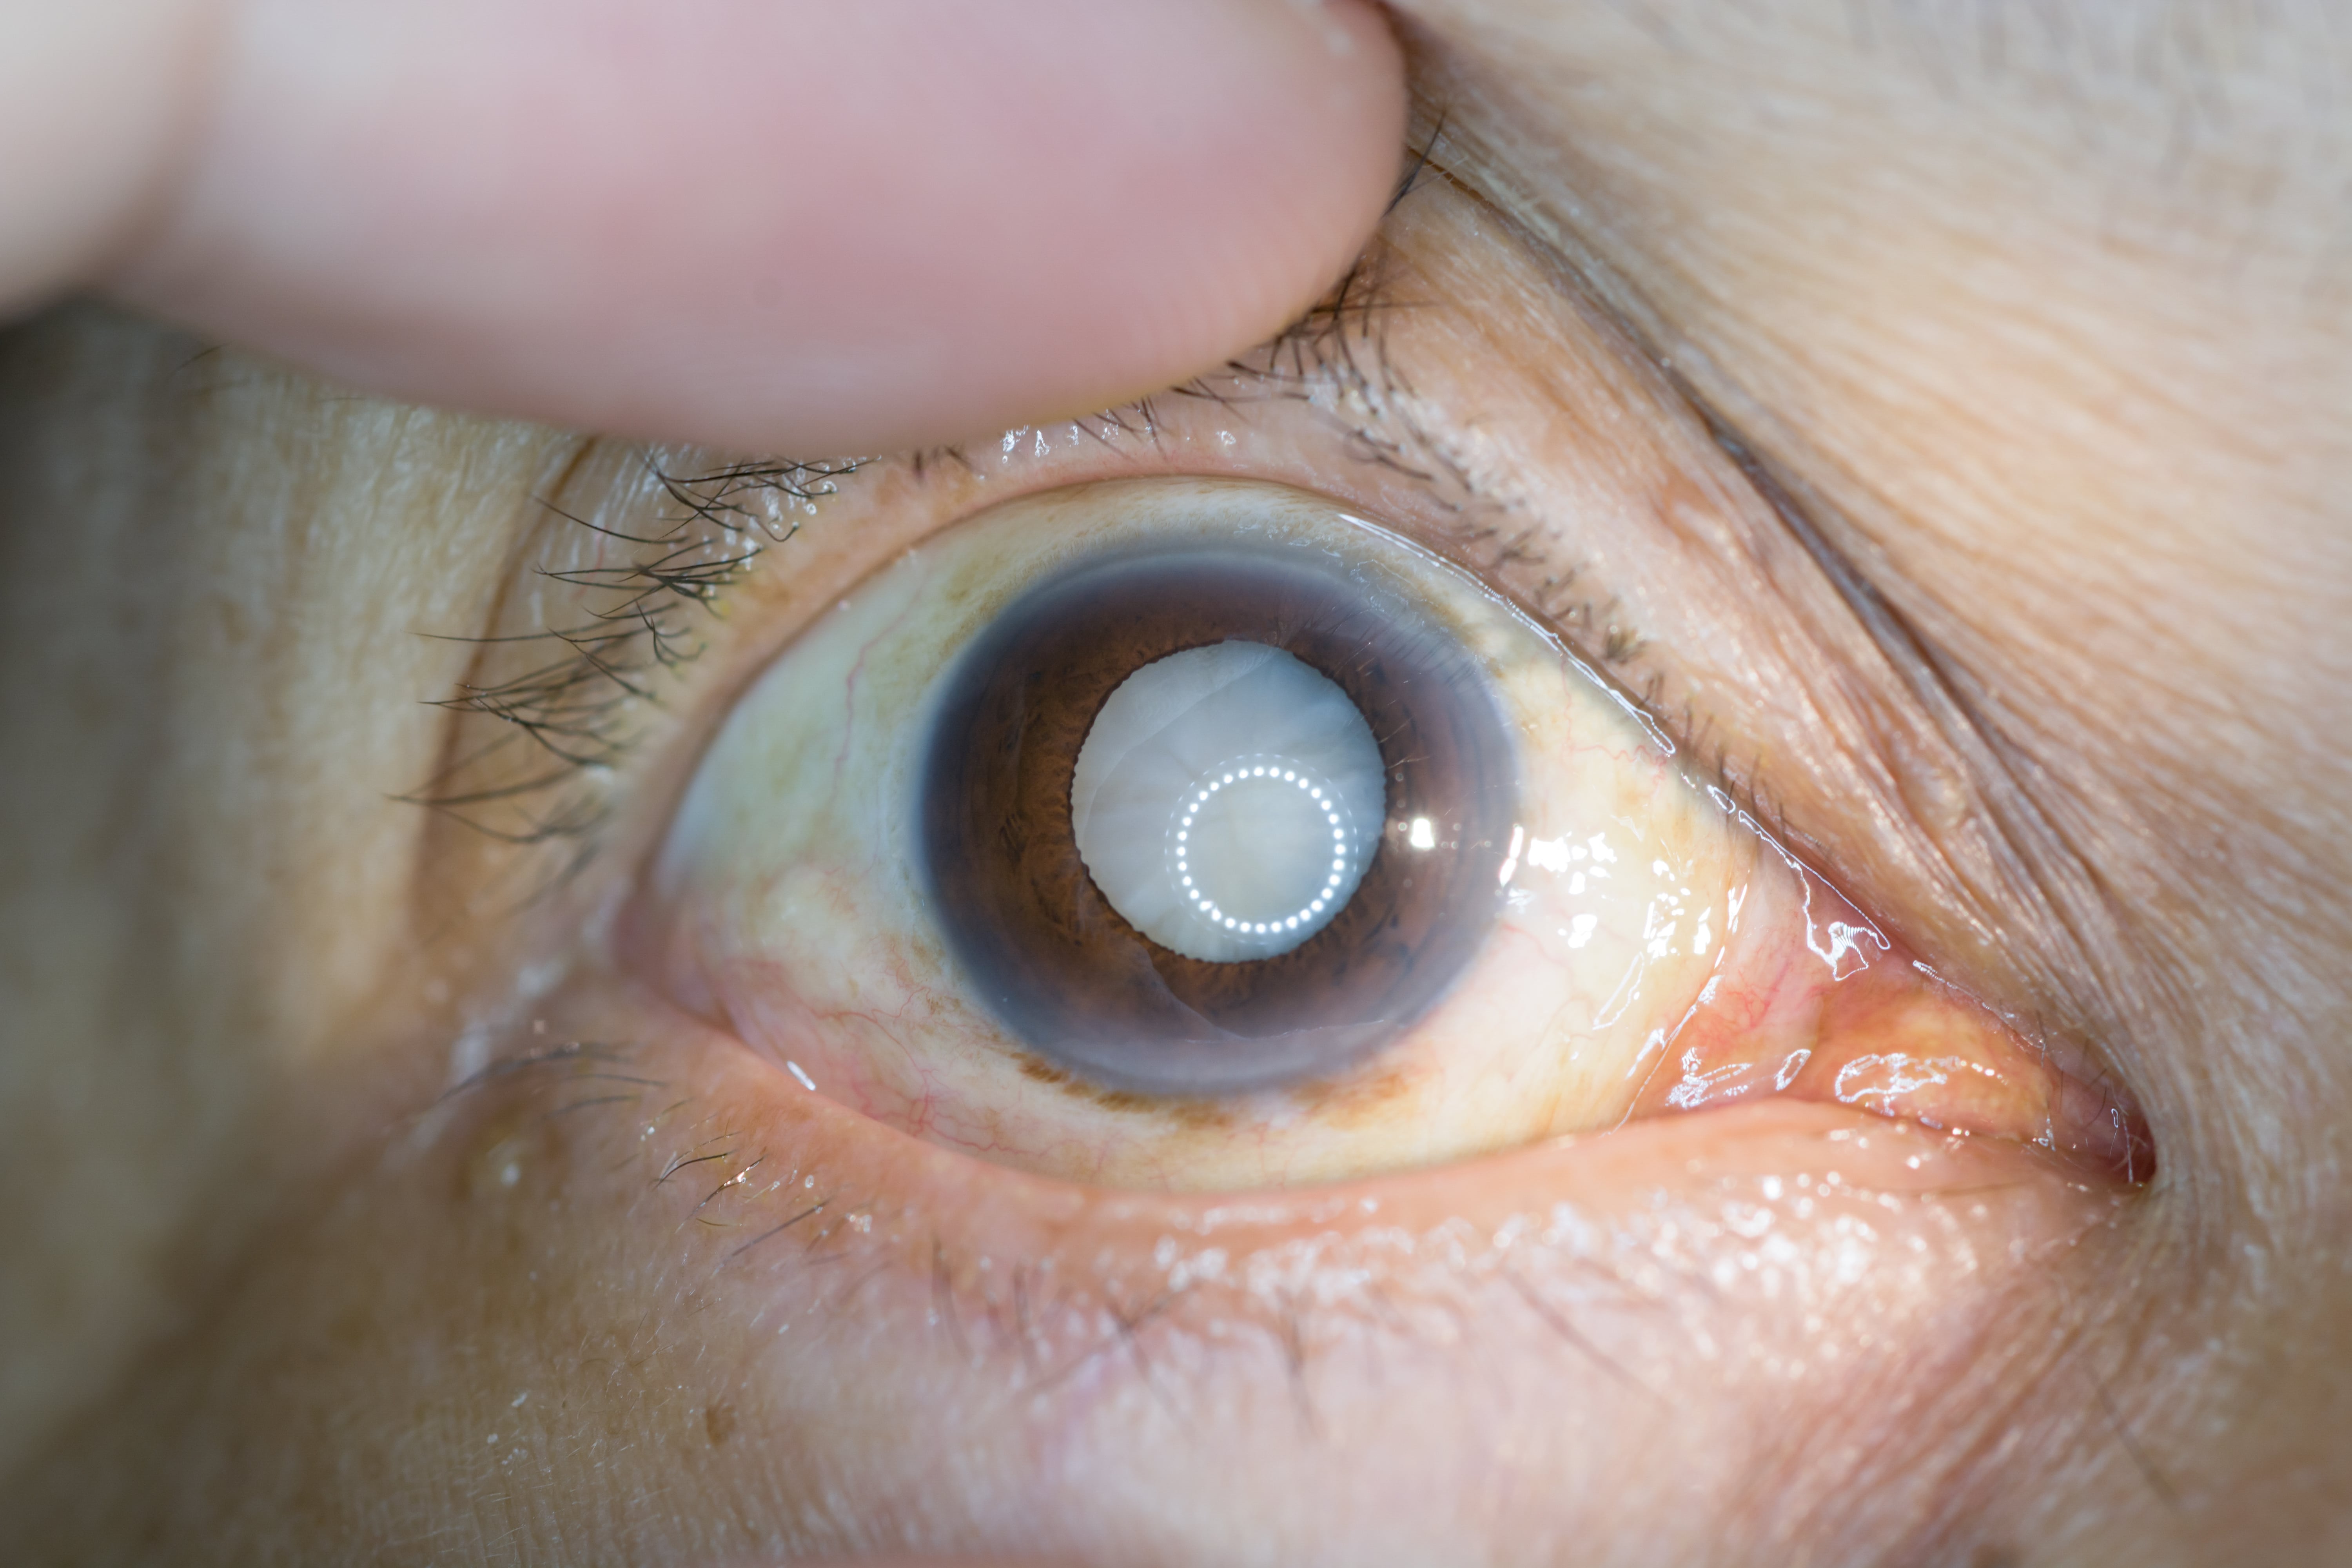 Zaćma jest chorobą oczu, która polega na zmętnieniu soczewki.